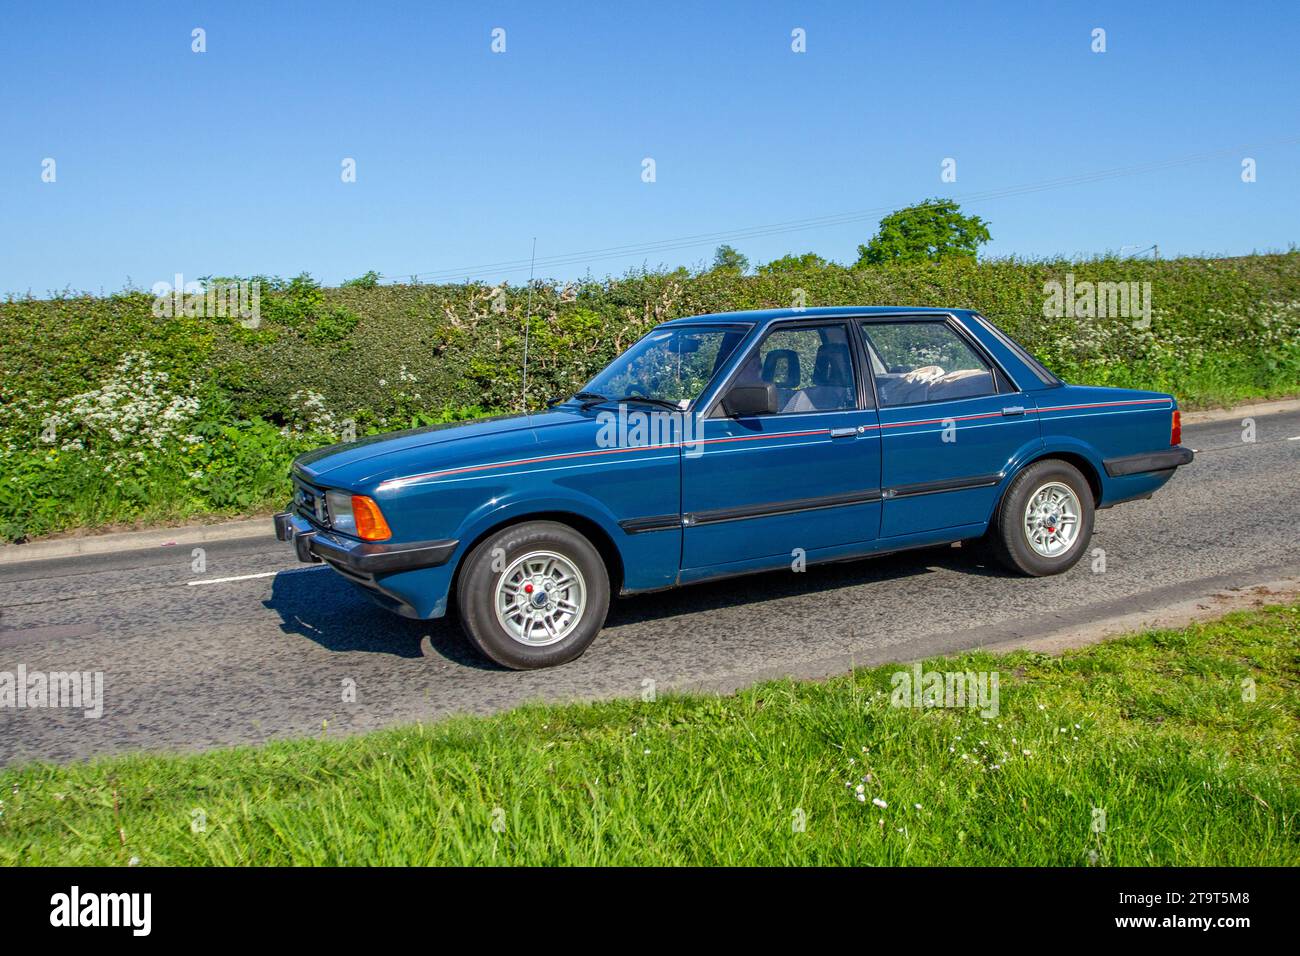 Ford Cortina1993 cc benzina quattro porte blu anni '1982 80, Mark V o TC3 4dr berlina. Motori d'epoca restaurati d'epoca, appassionati di auto da collezione, auto storiche d'epoca che viaggiano nel Cheshire, Regno Unito Foto Stock